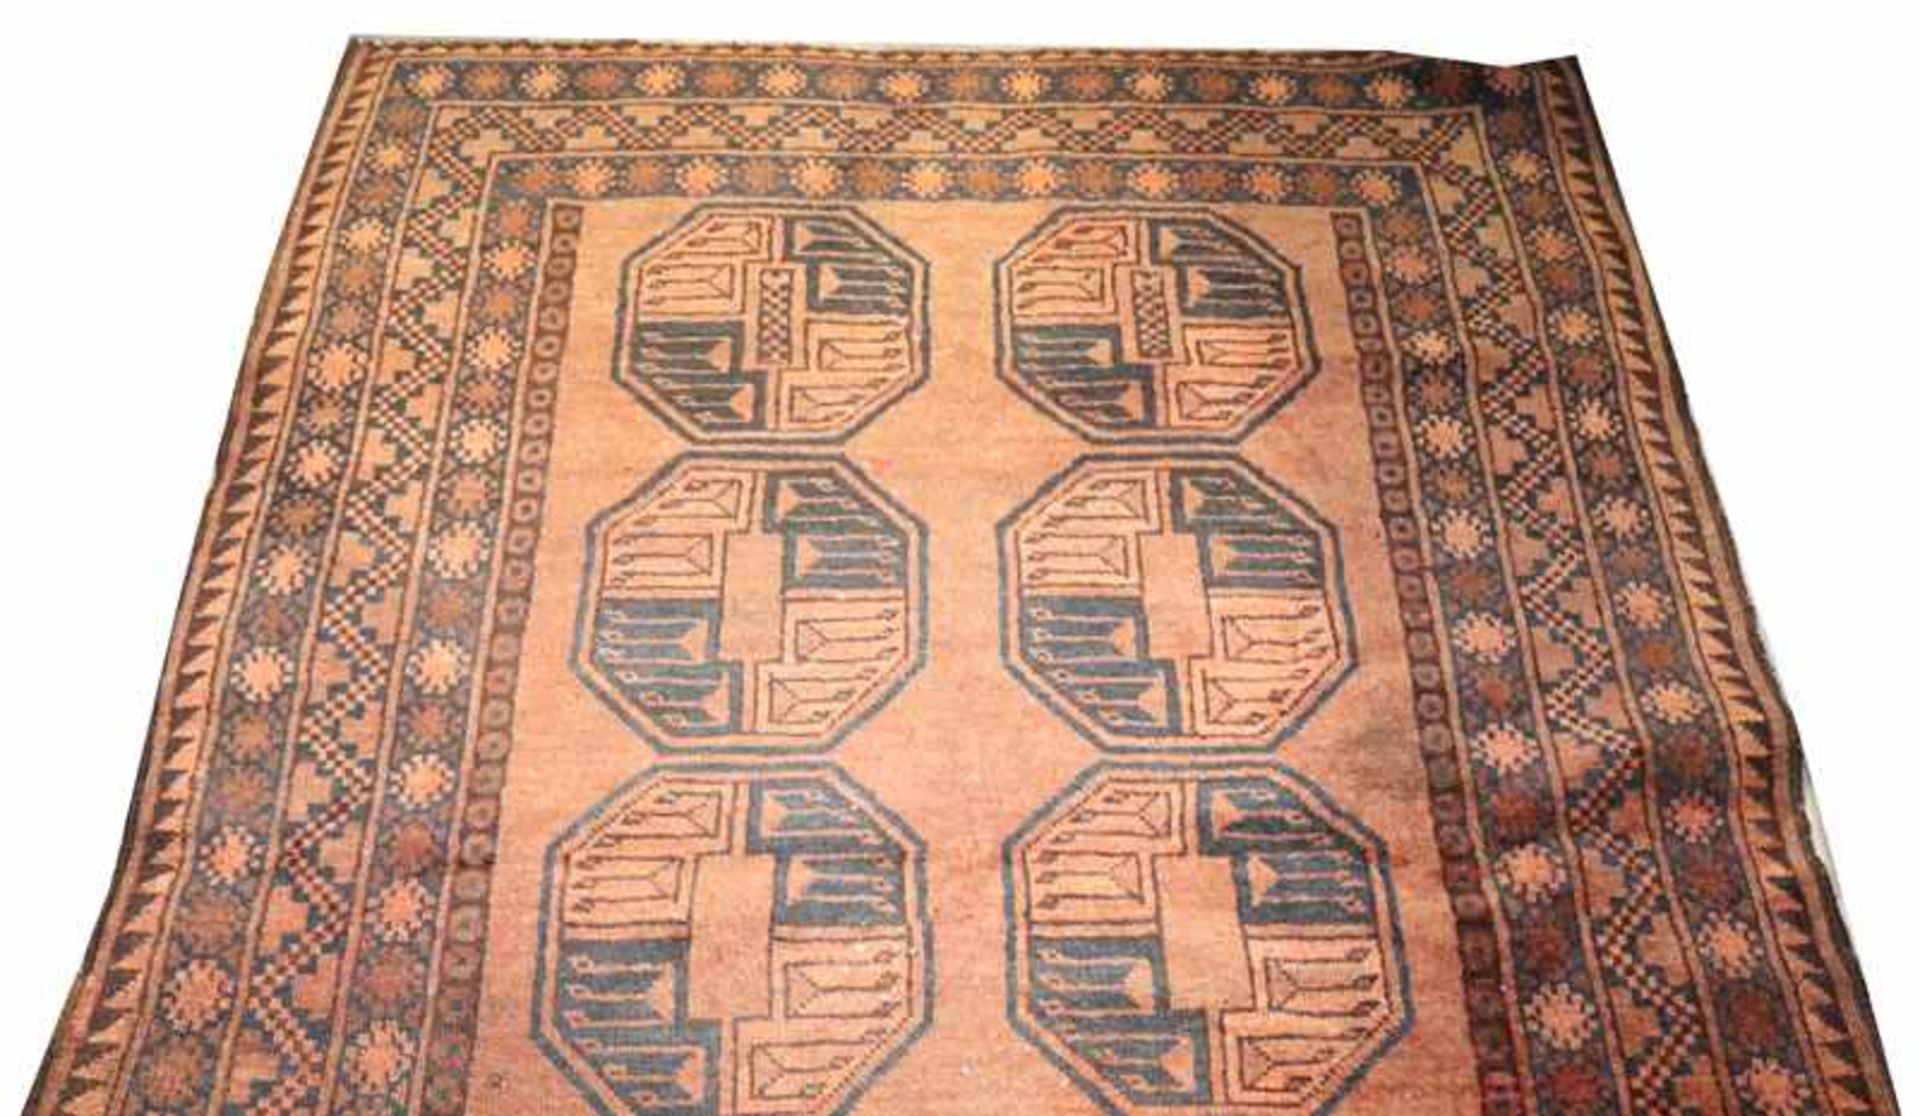 Teppich, rotbraun/braun, 117 cm x 121 cm, starke Gebrauchsspuren